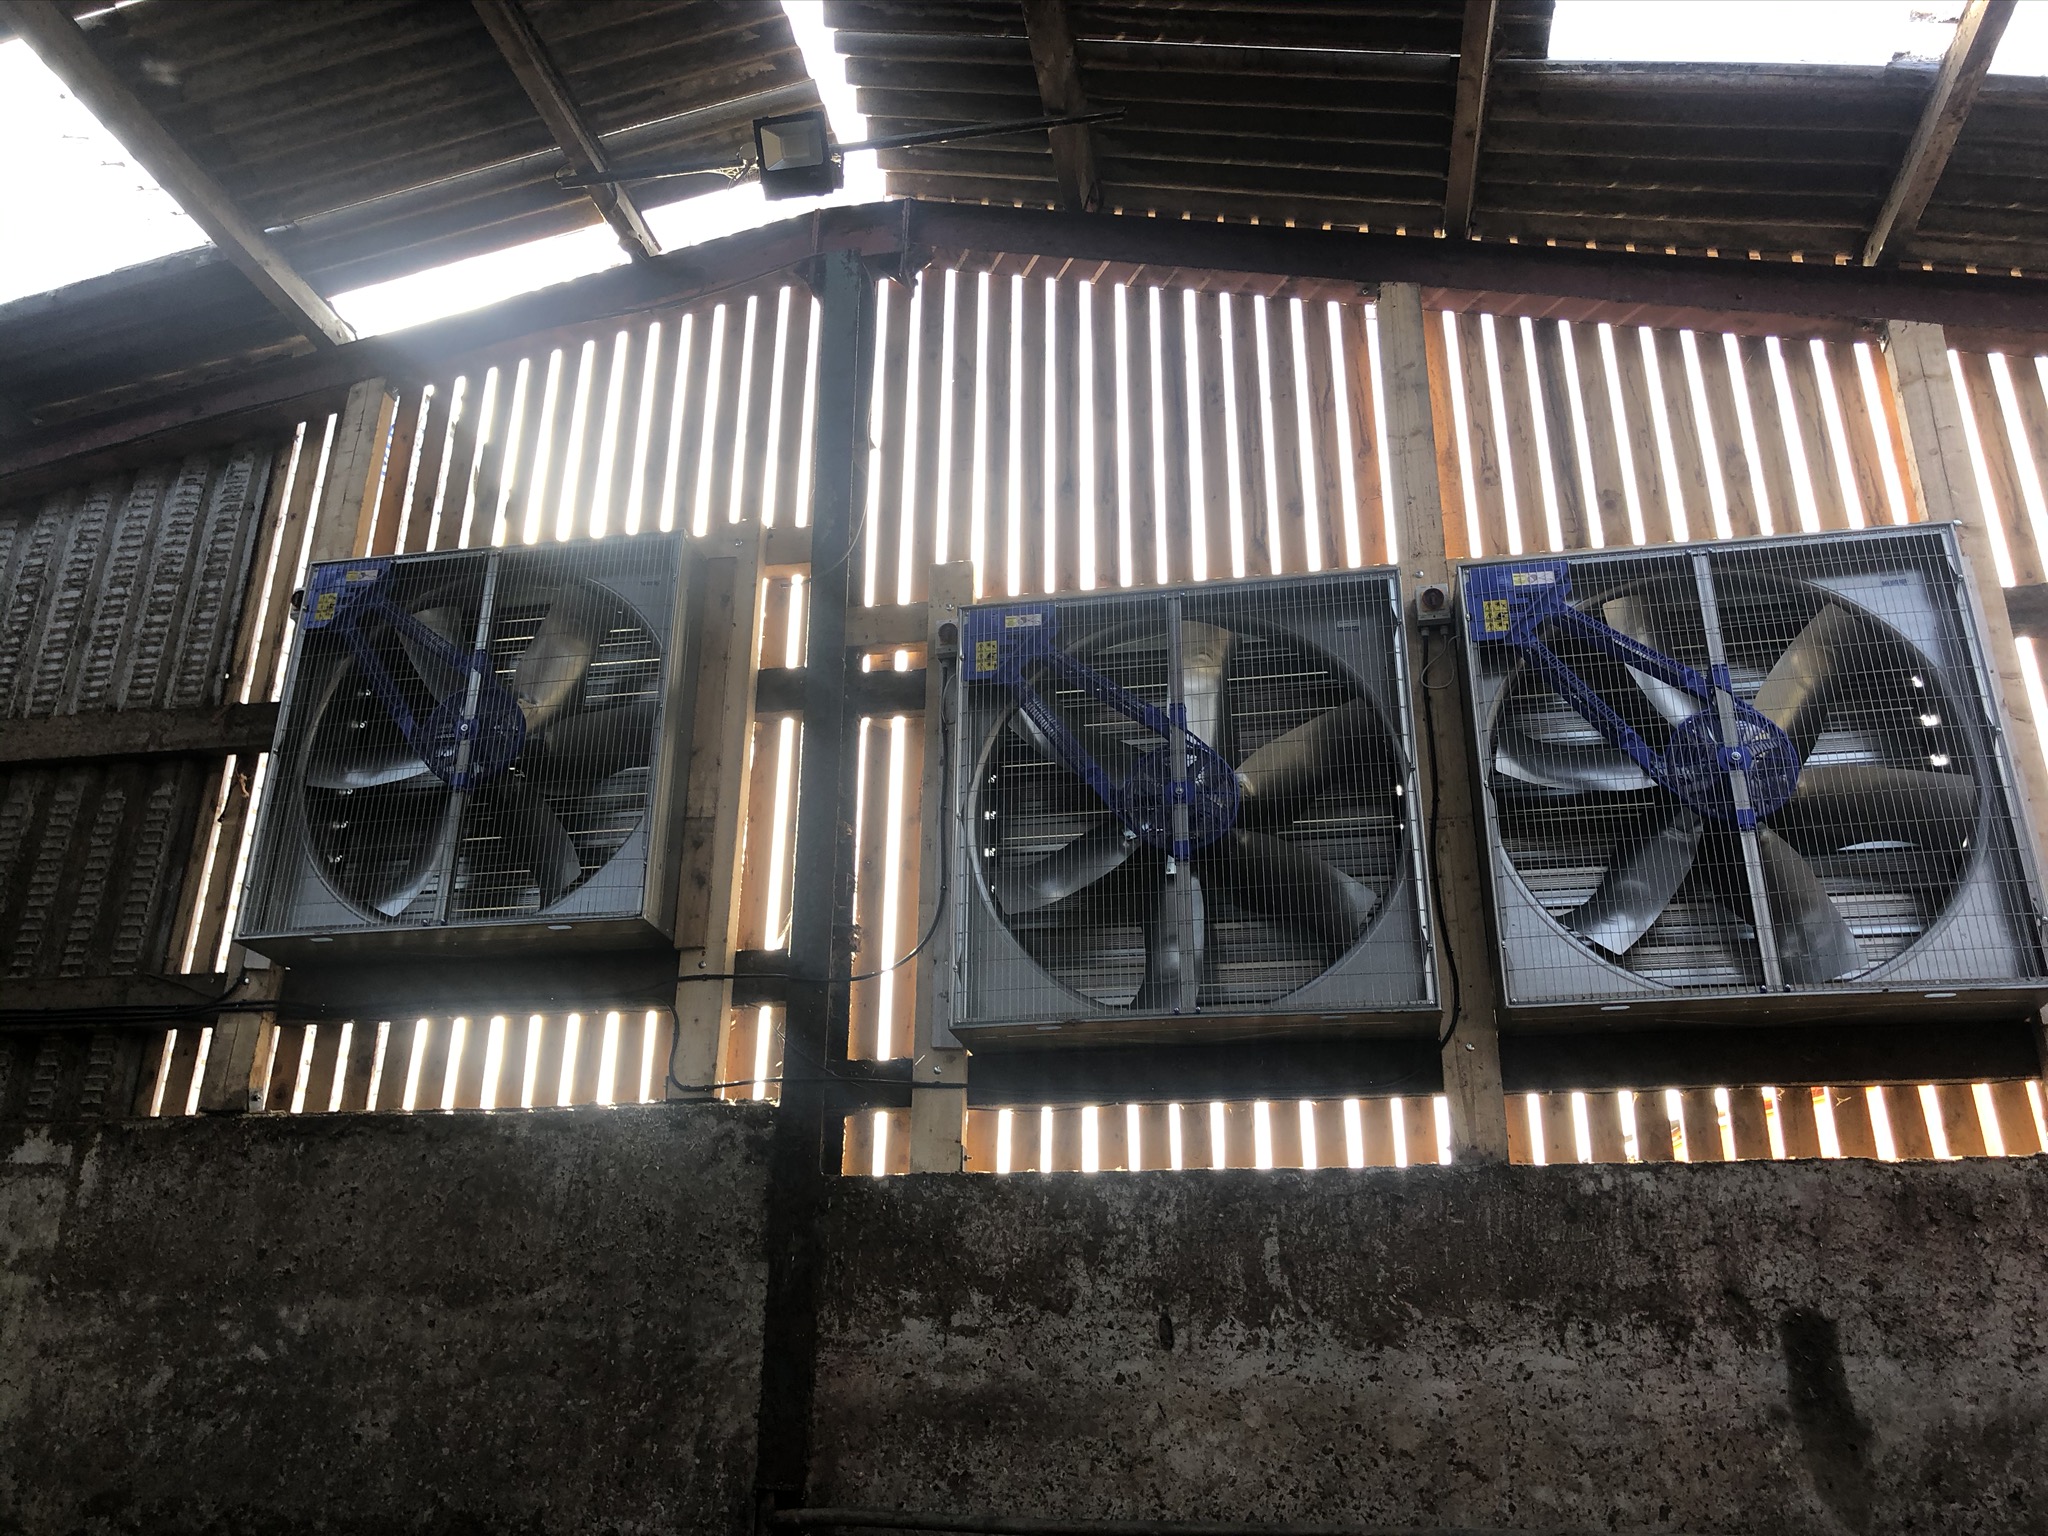 3 ventilation fans